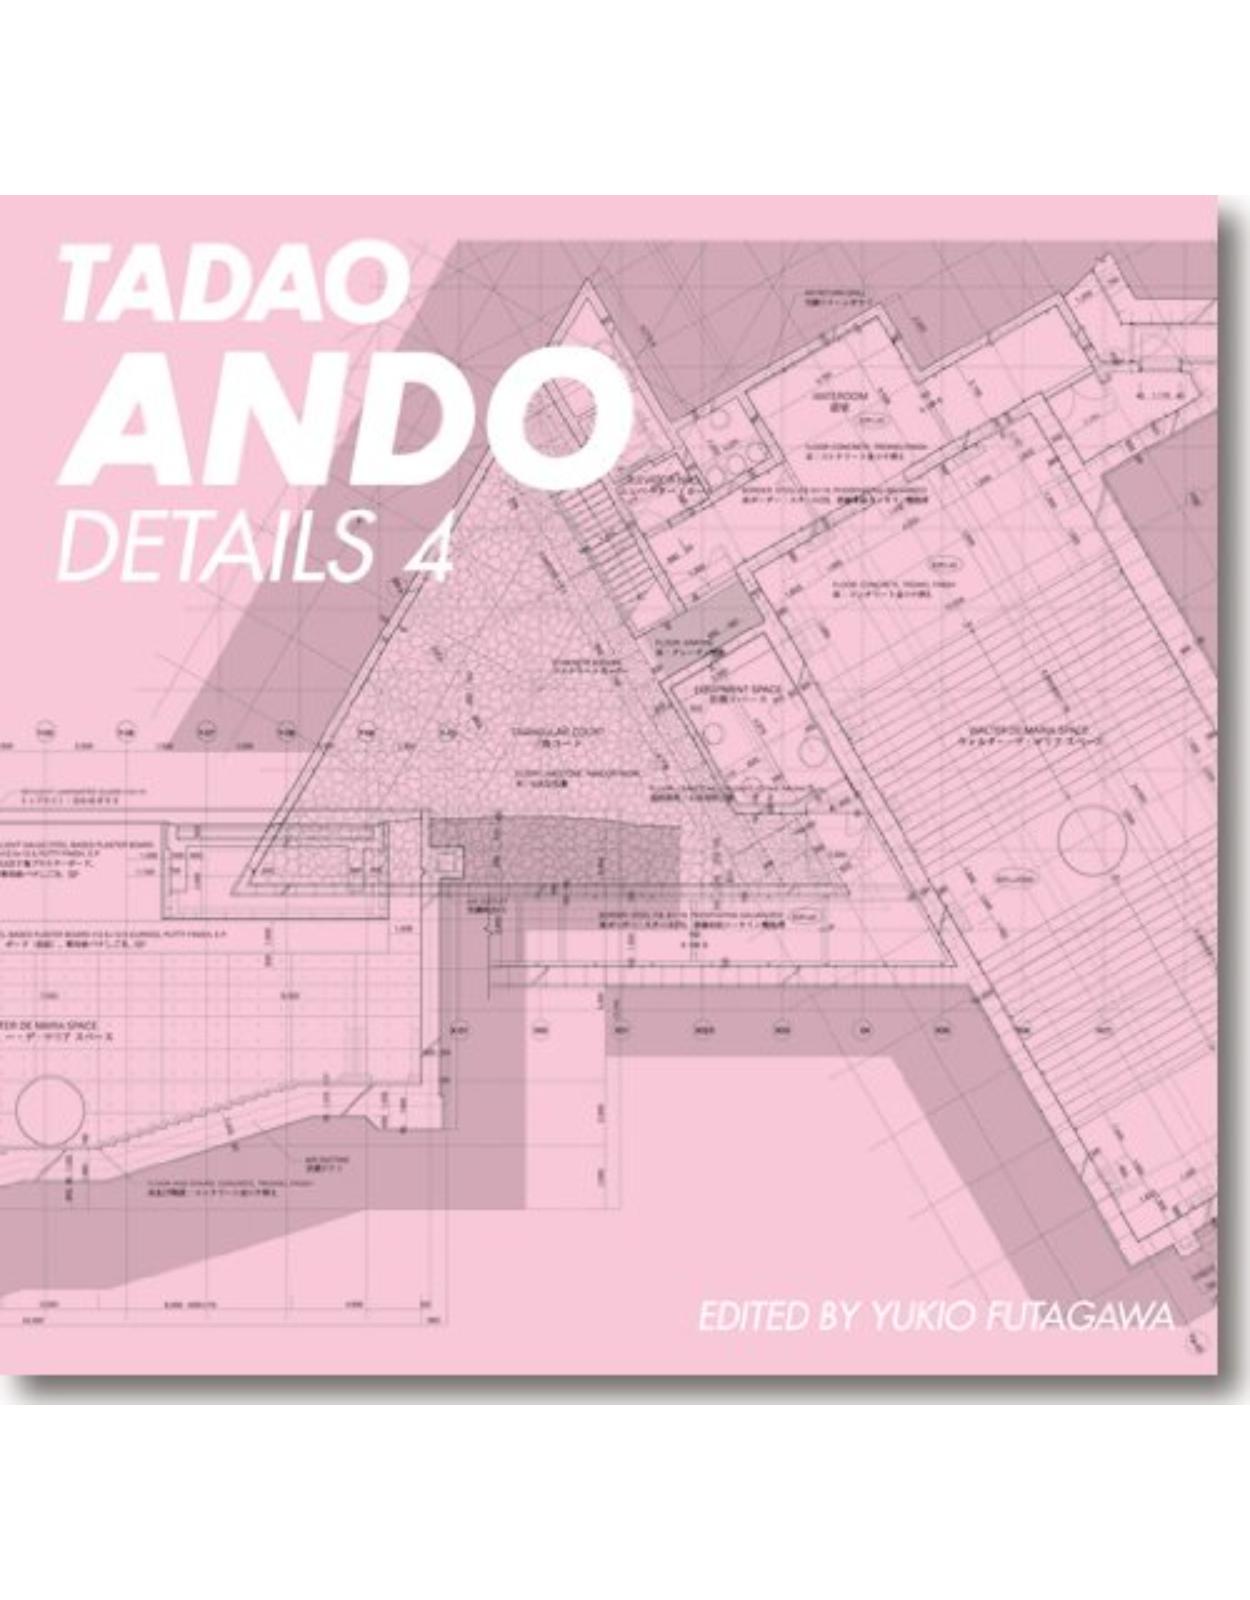 Tadao Ando - Details 4